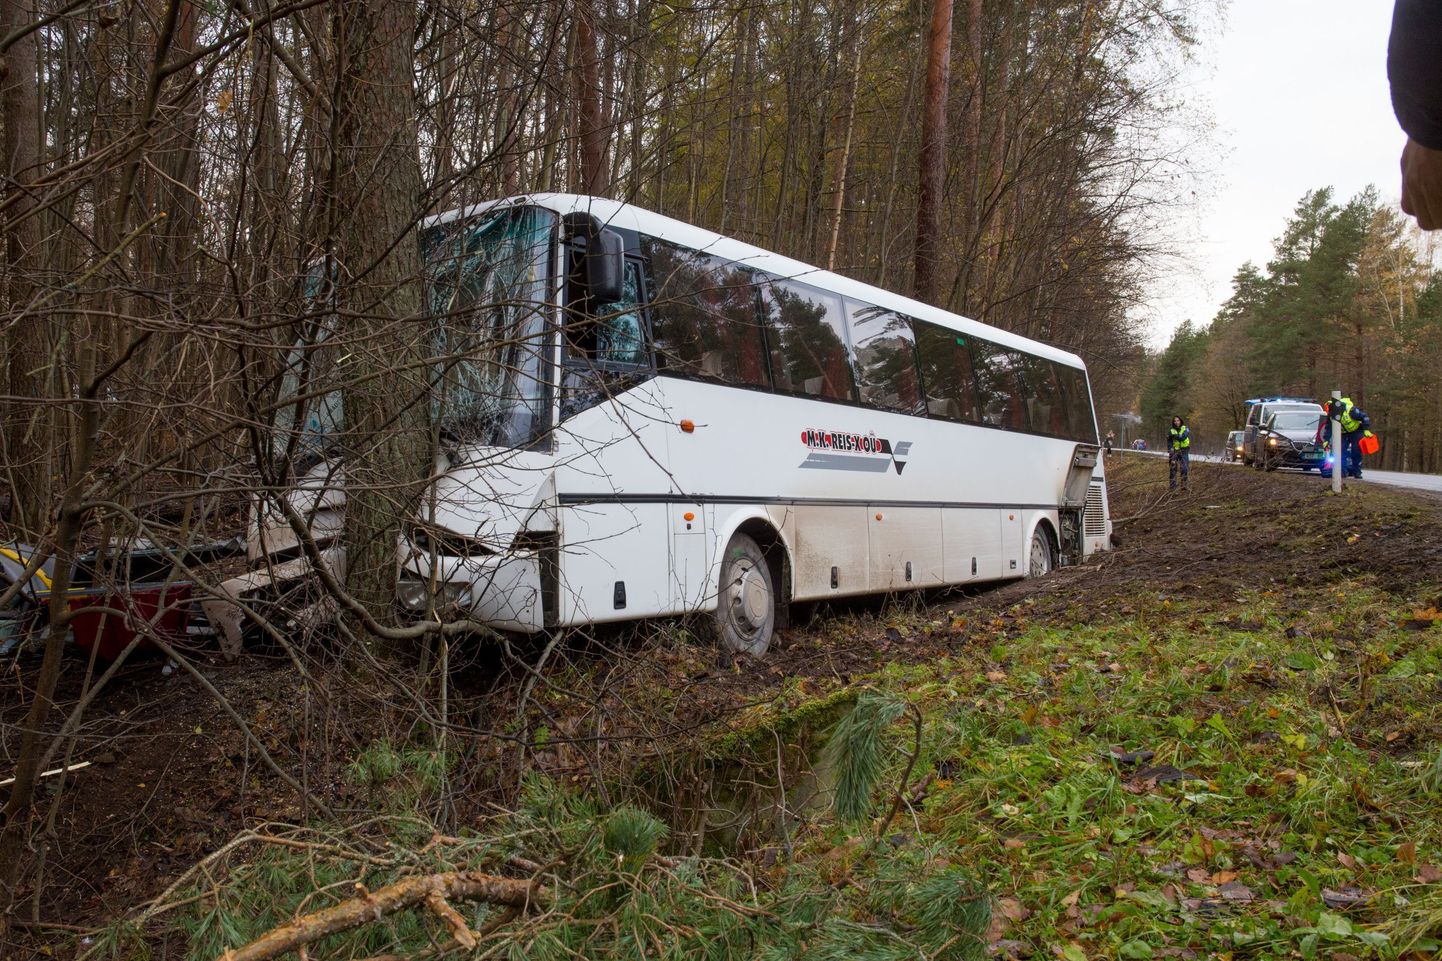 Авария произошла в субботу утром на 142 километре шоссе Таллинн-Пярну-Икла. 61-летний водитель погиб на месте происшествия.